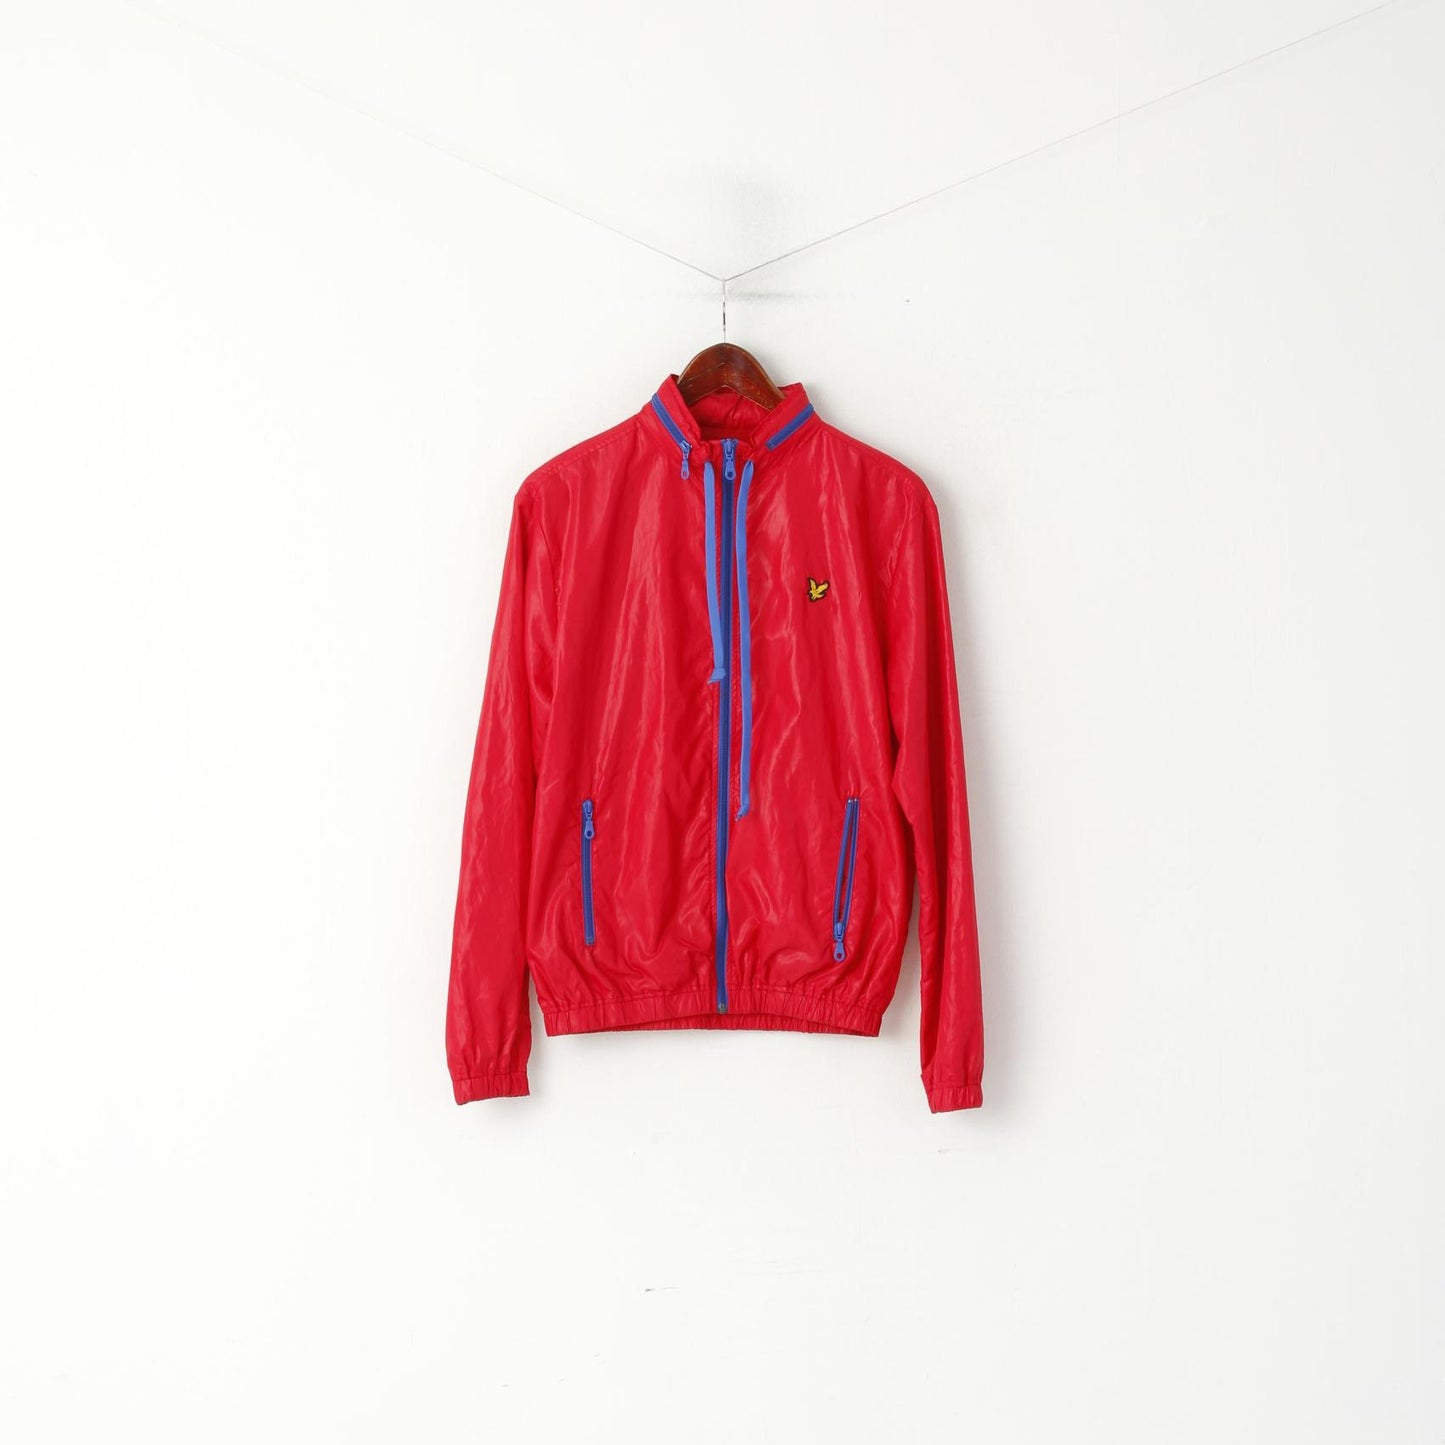 Lyle & Scott Vintage Women M Jacket Red Full Zipper Hidden Hood Light Top